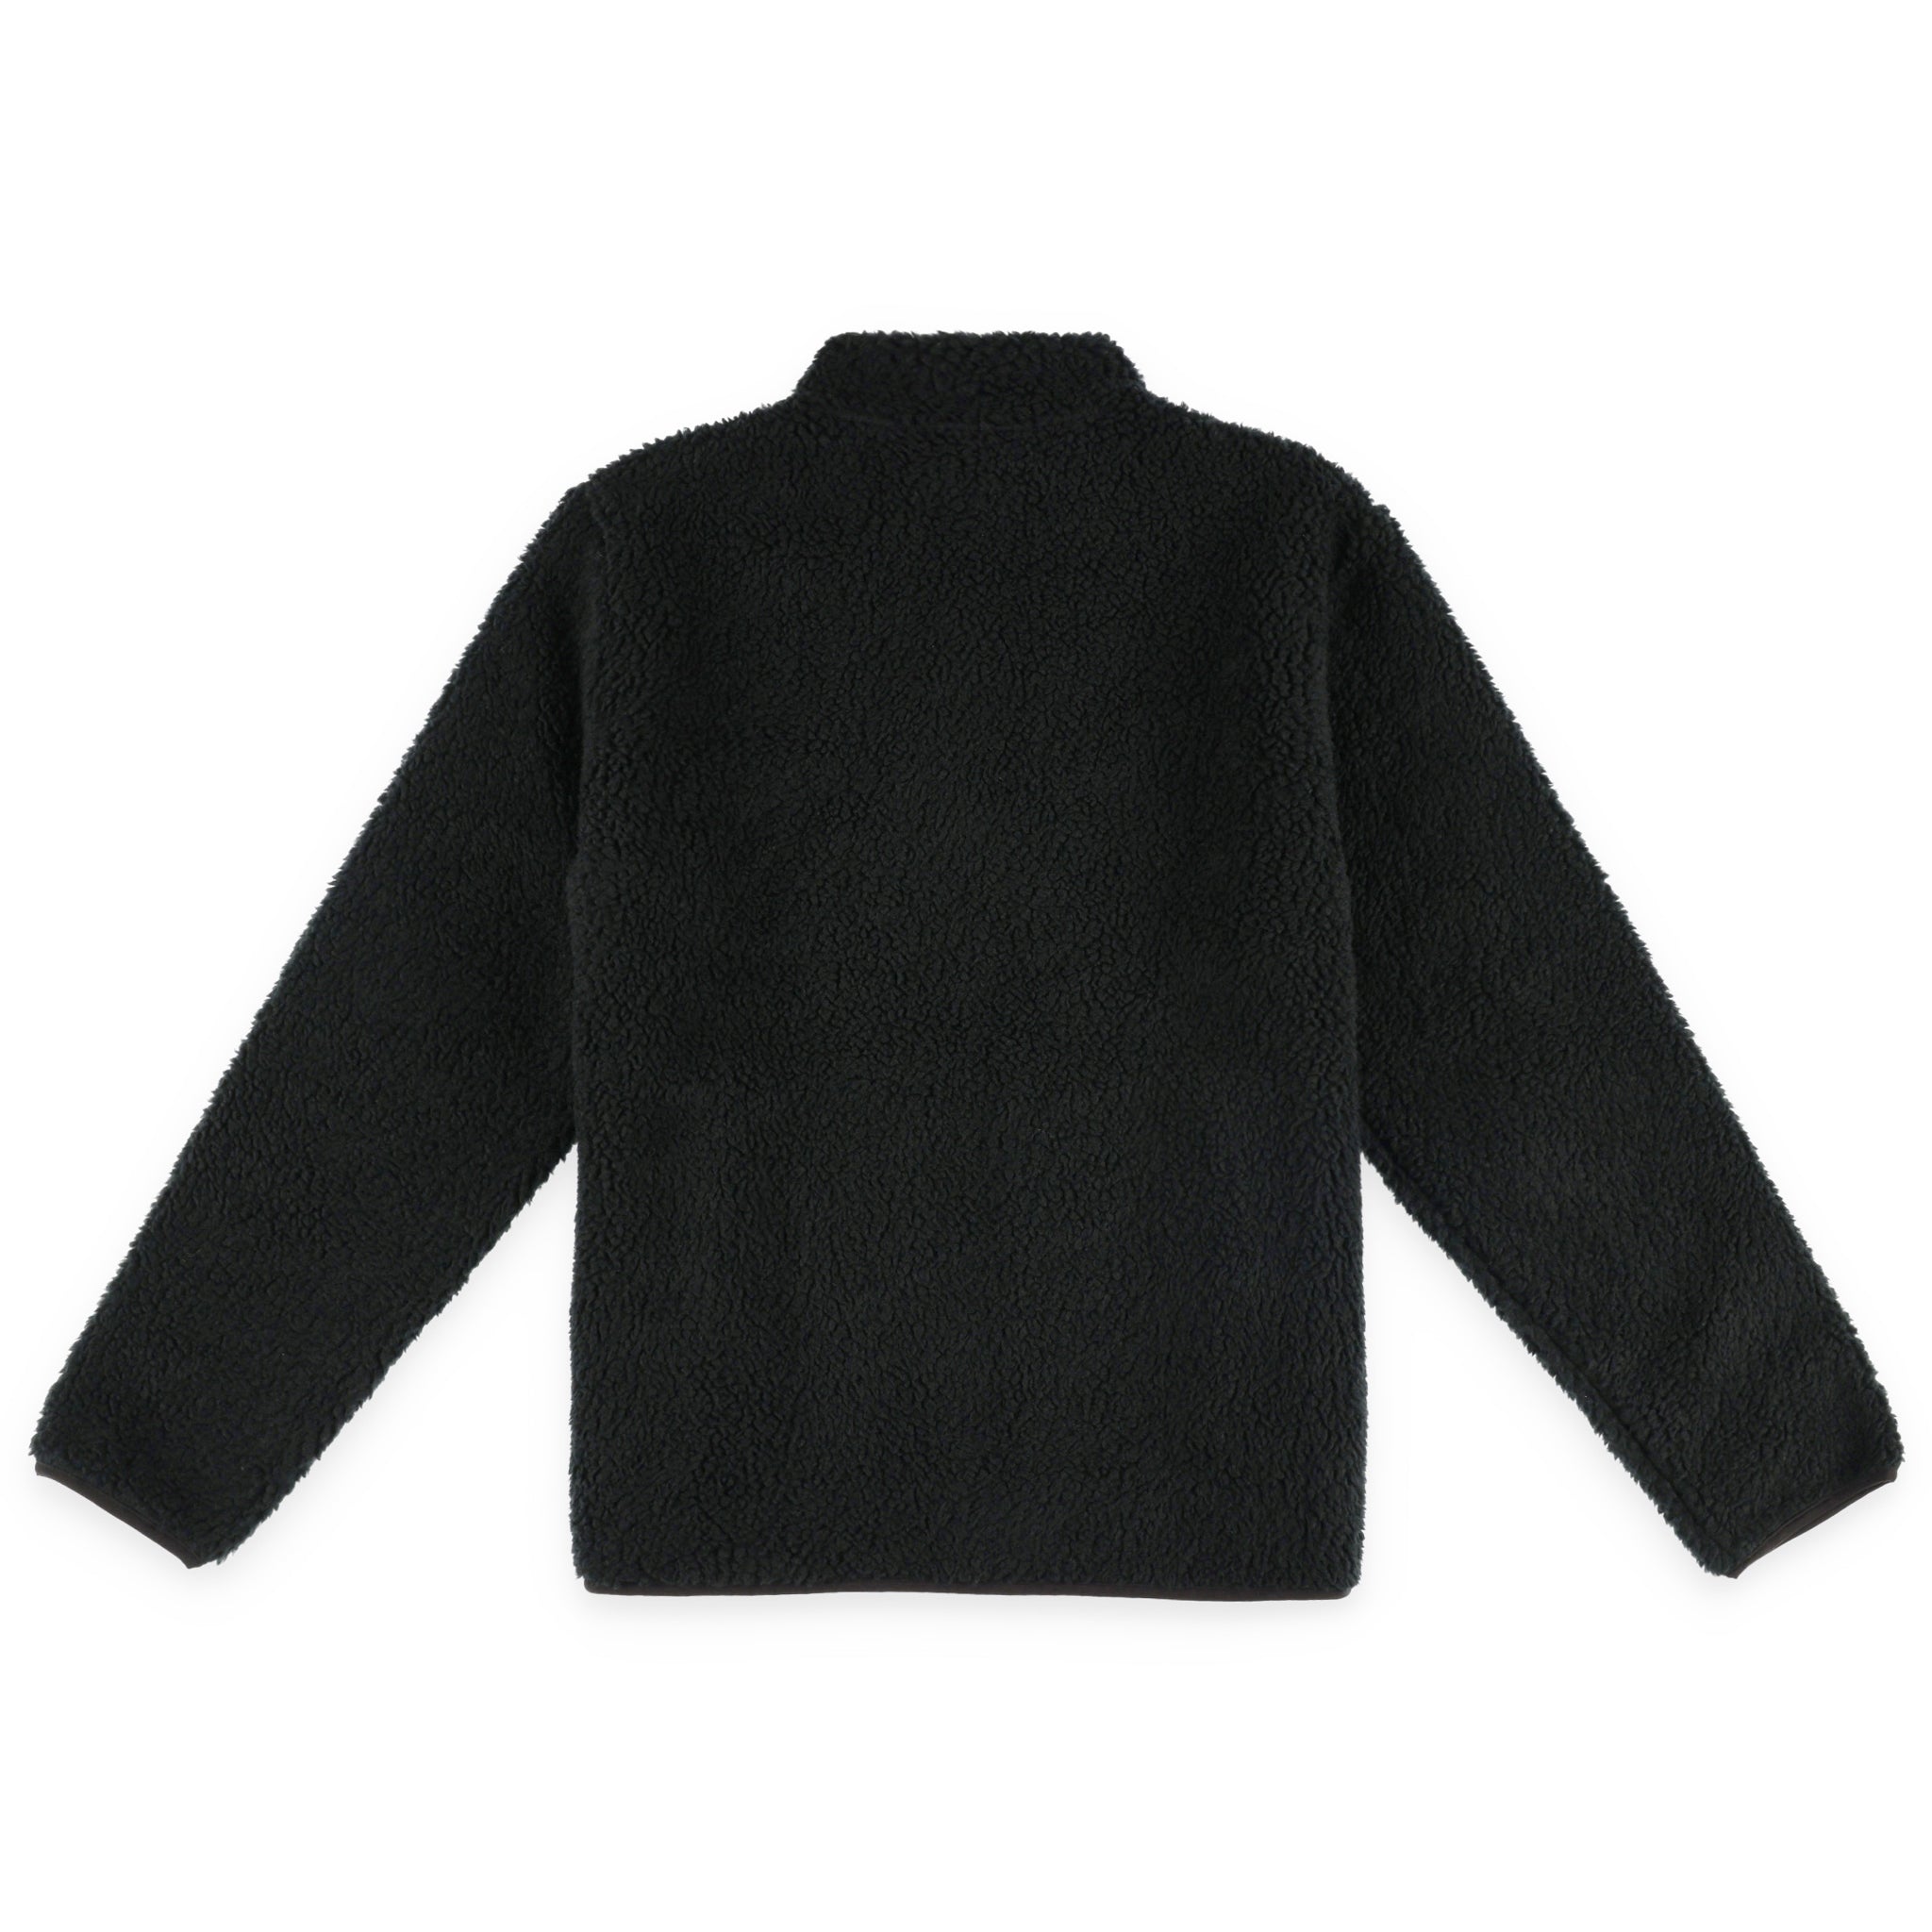 Back of Topo Designs Men's Sherpa fleece reversible Jacket in "Black" showing sherpa fleece side.